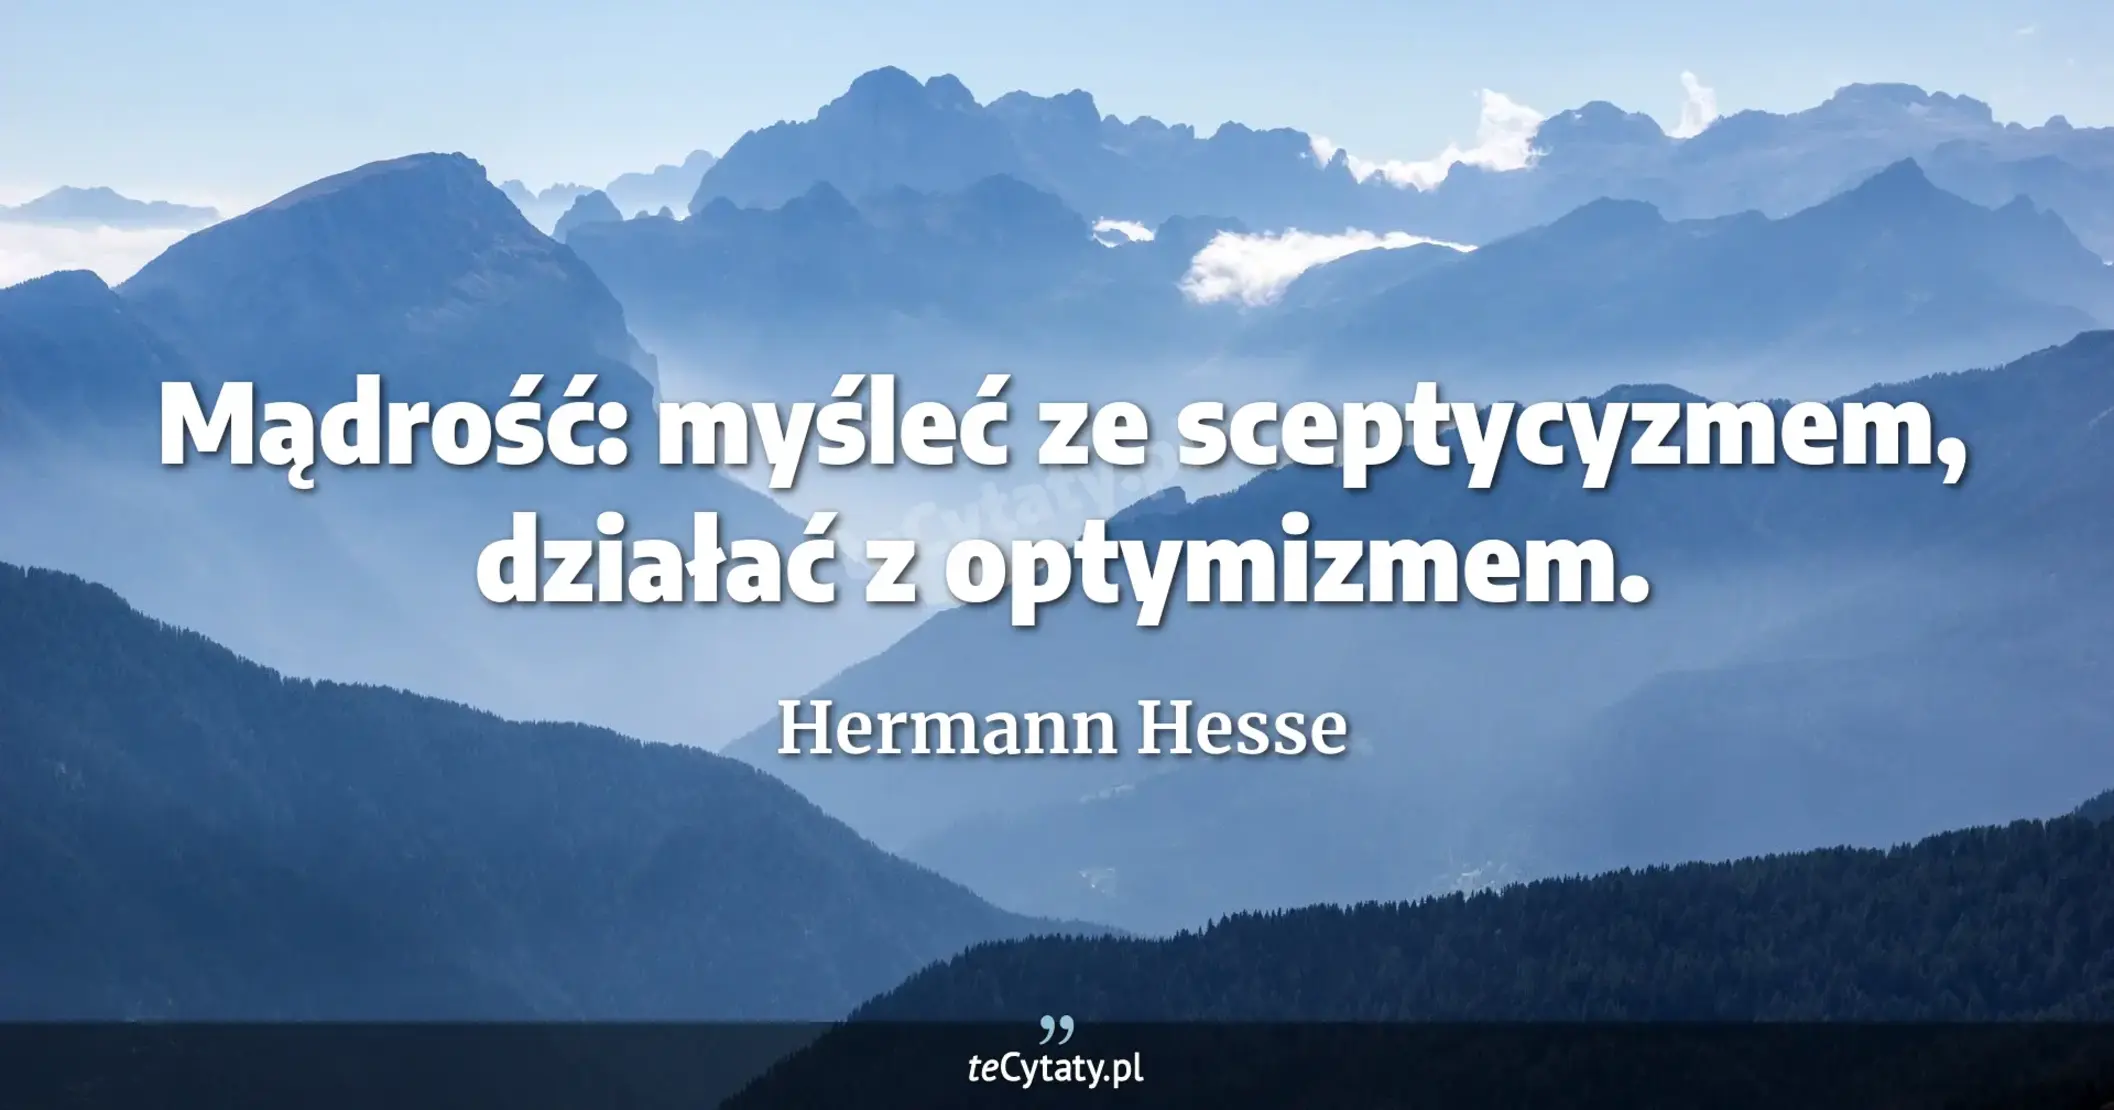 Mądrość: myśleć ze sceptycyzmem, działać z optymizmem. - Hermann Hesse